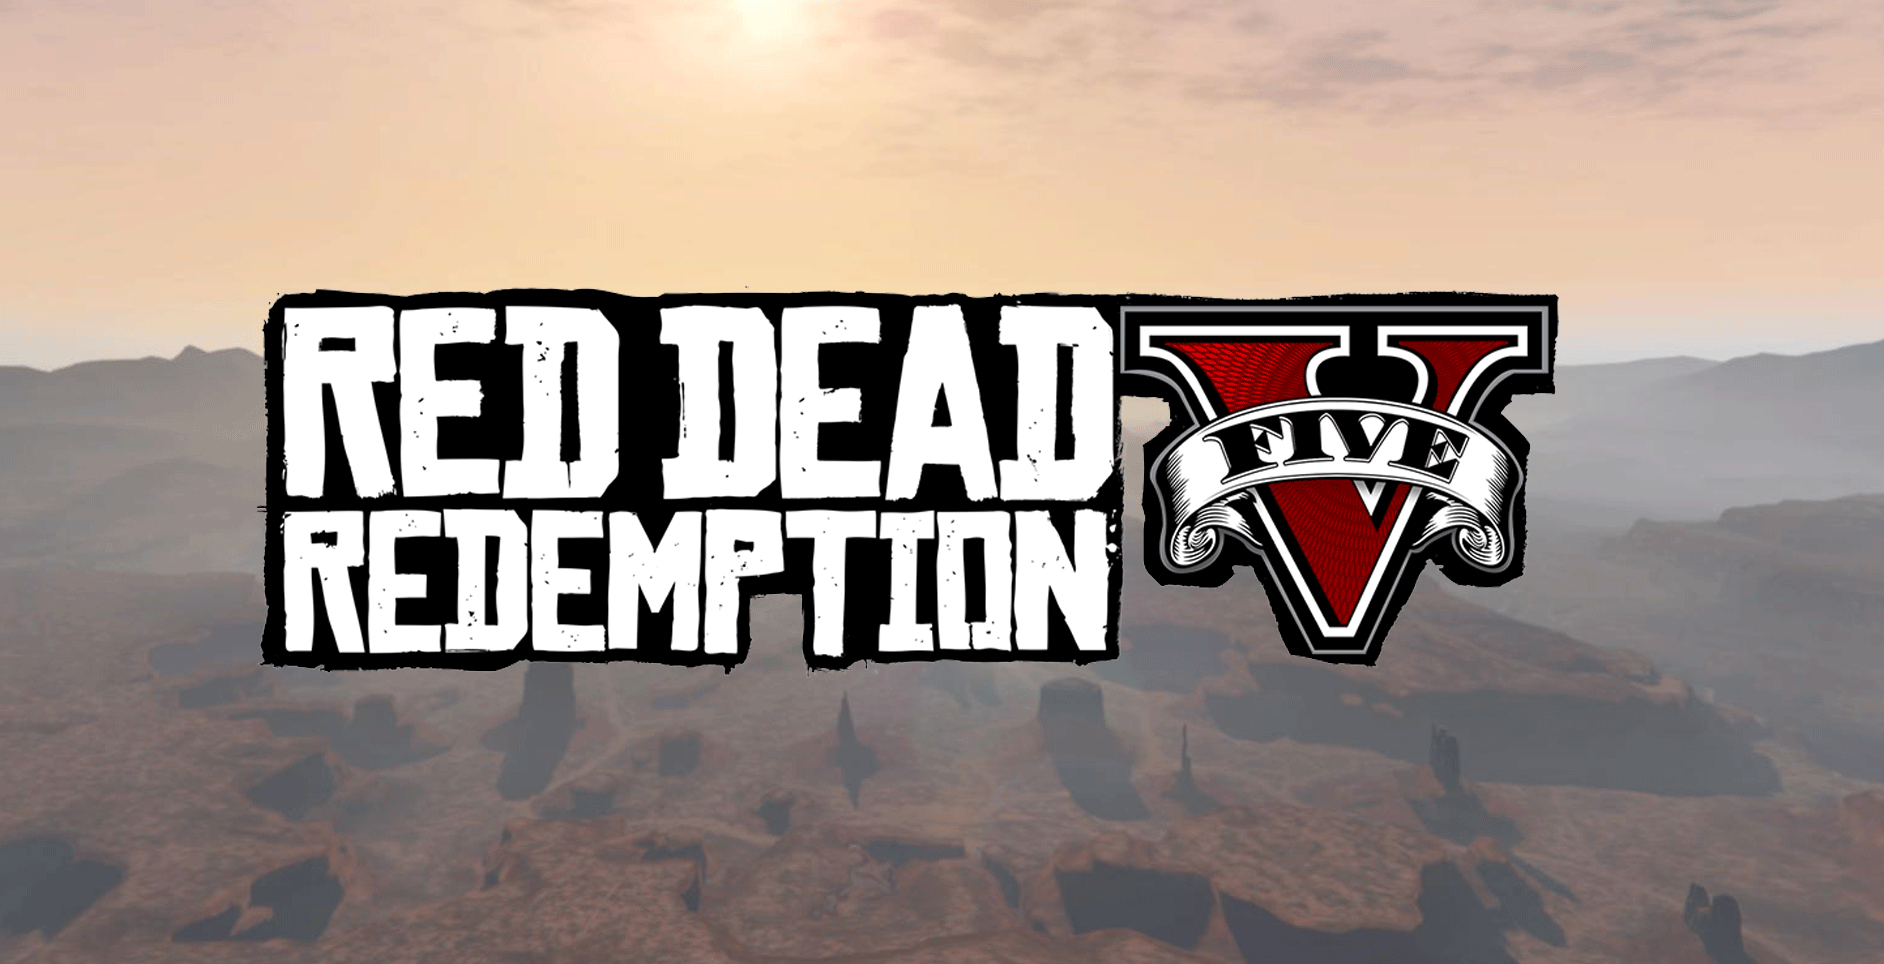 Red Dead Redemption V